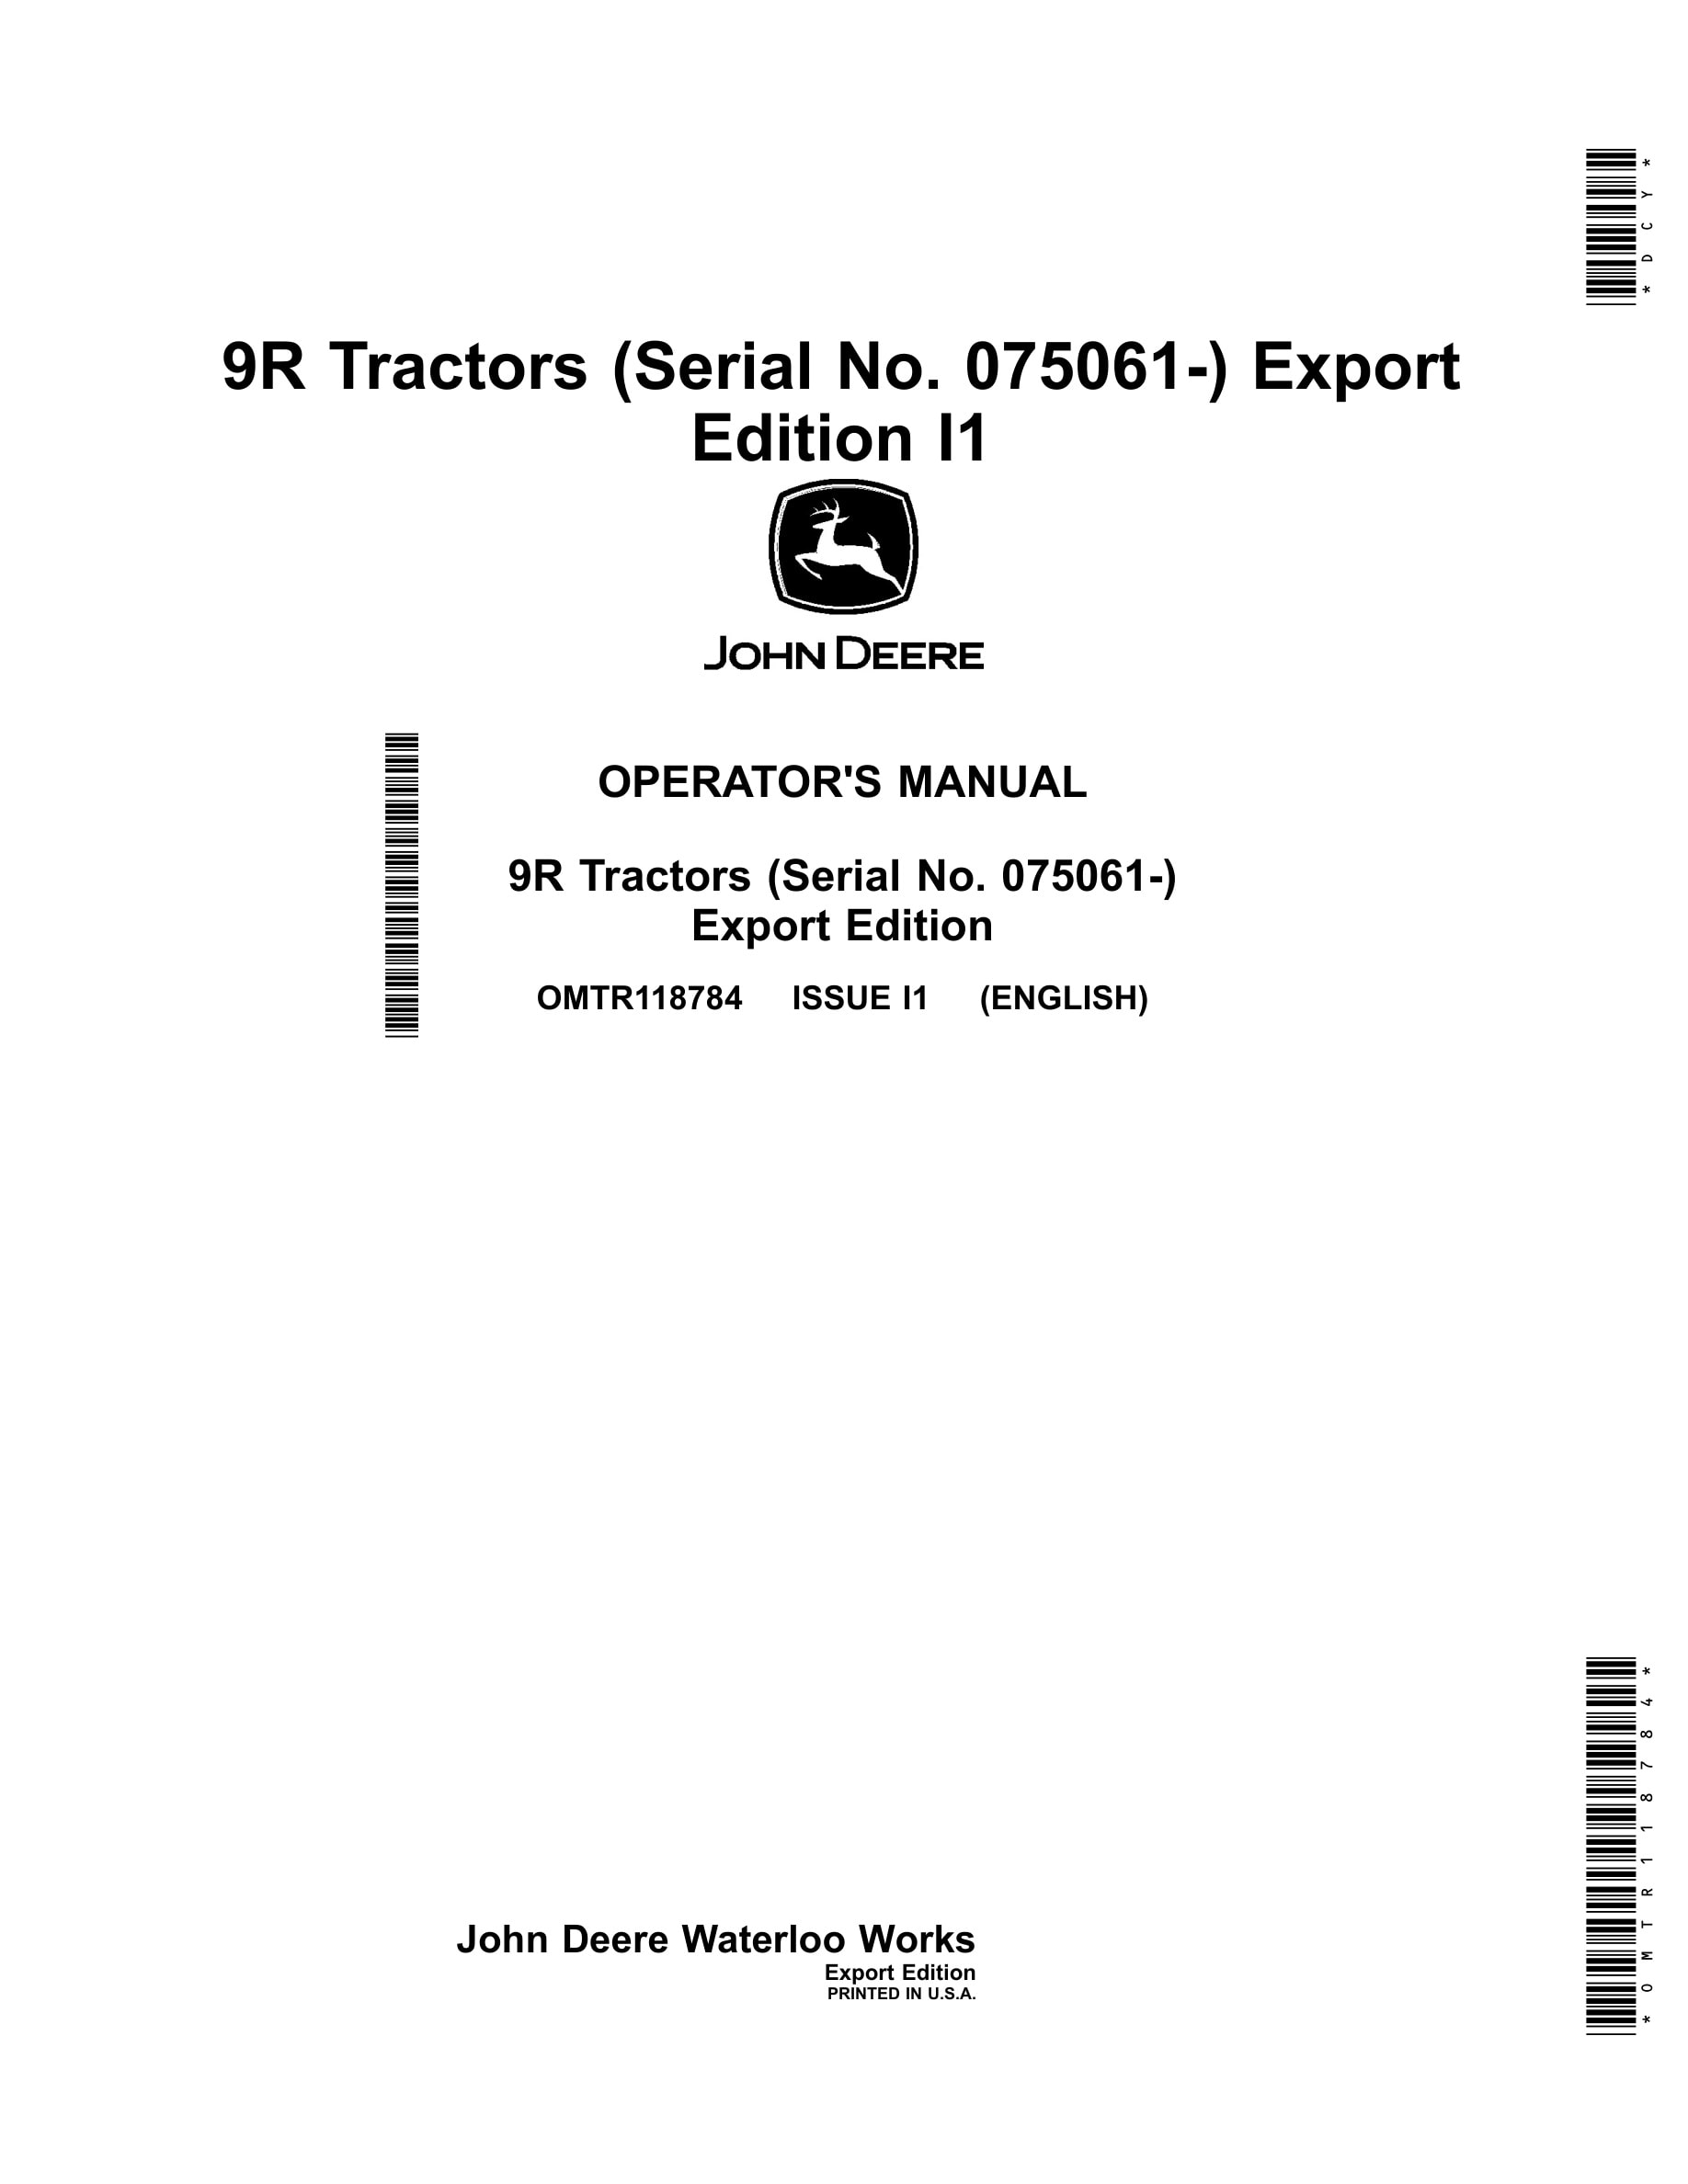 John Deere 9r Tractors Operator Manuals OMTR118784-1